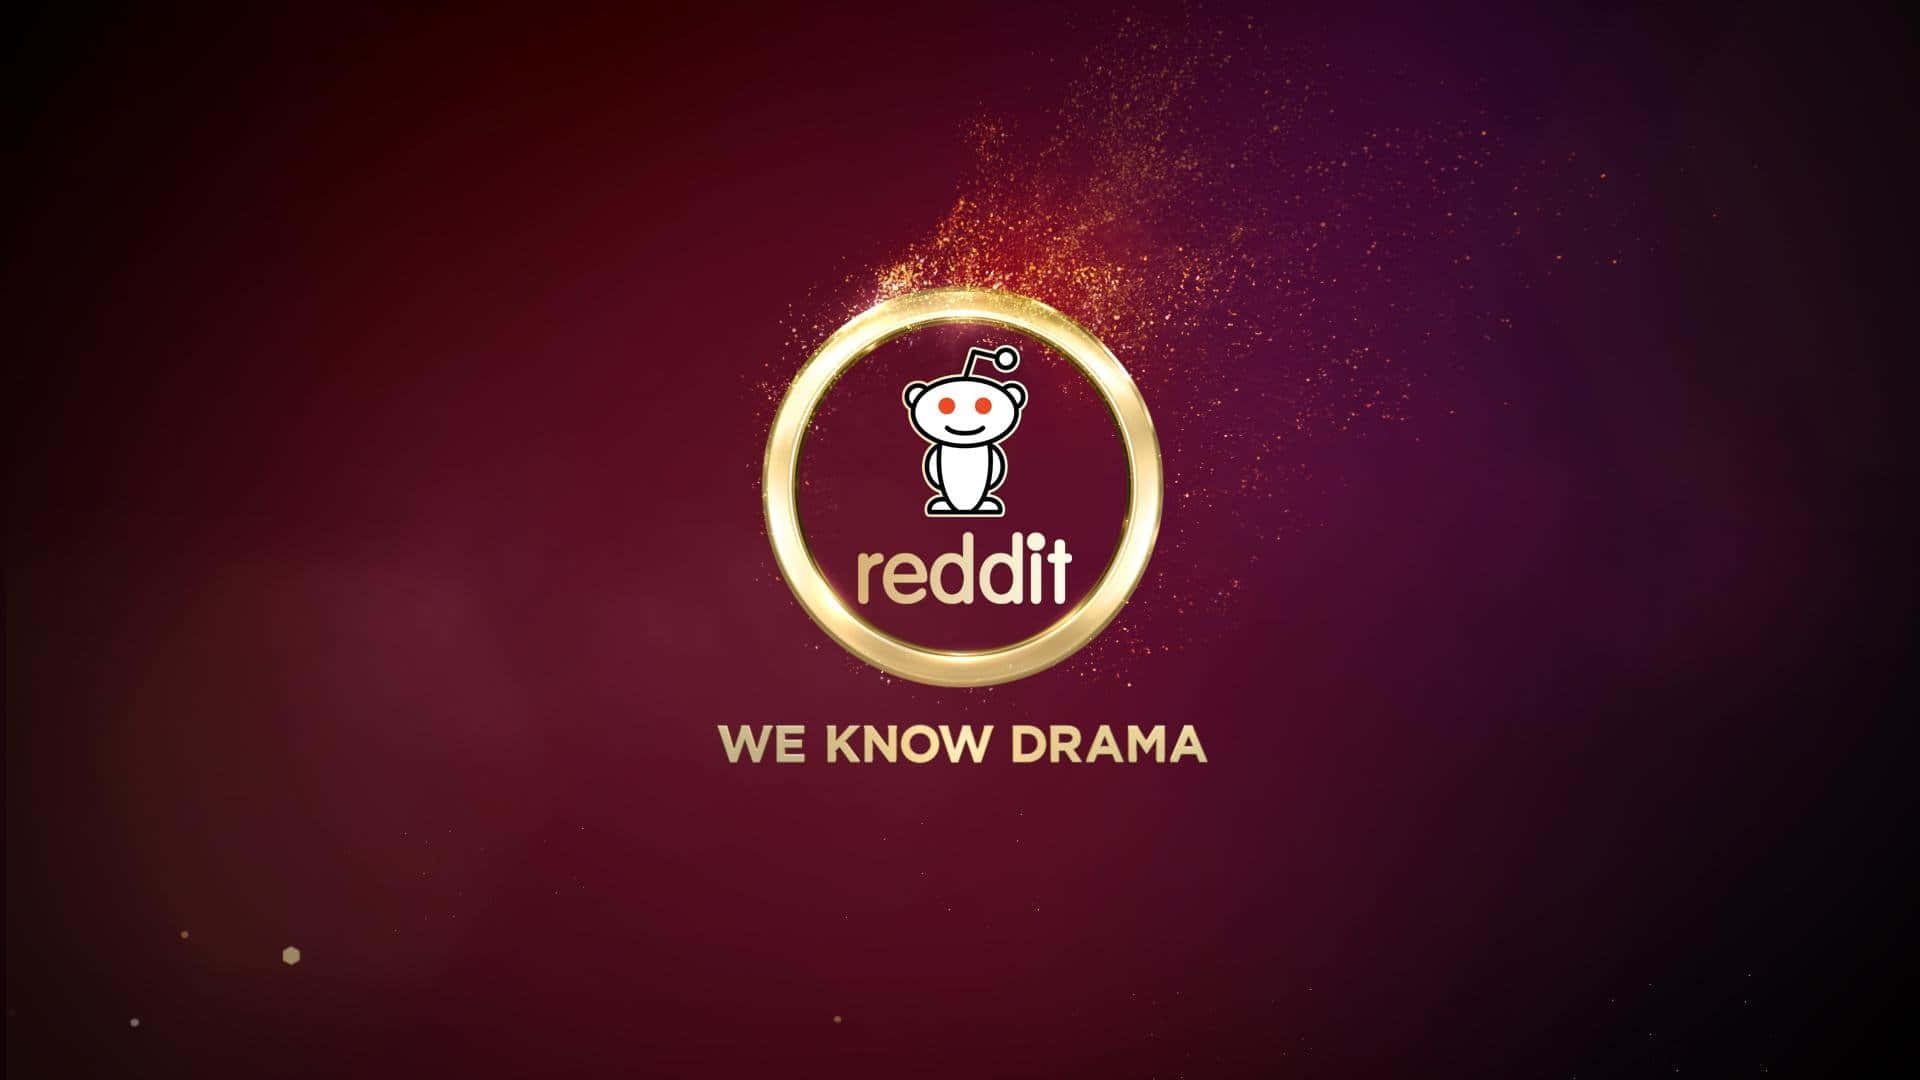 Reddit,conocemos El Drama.